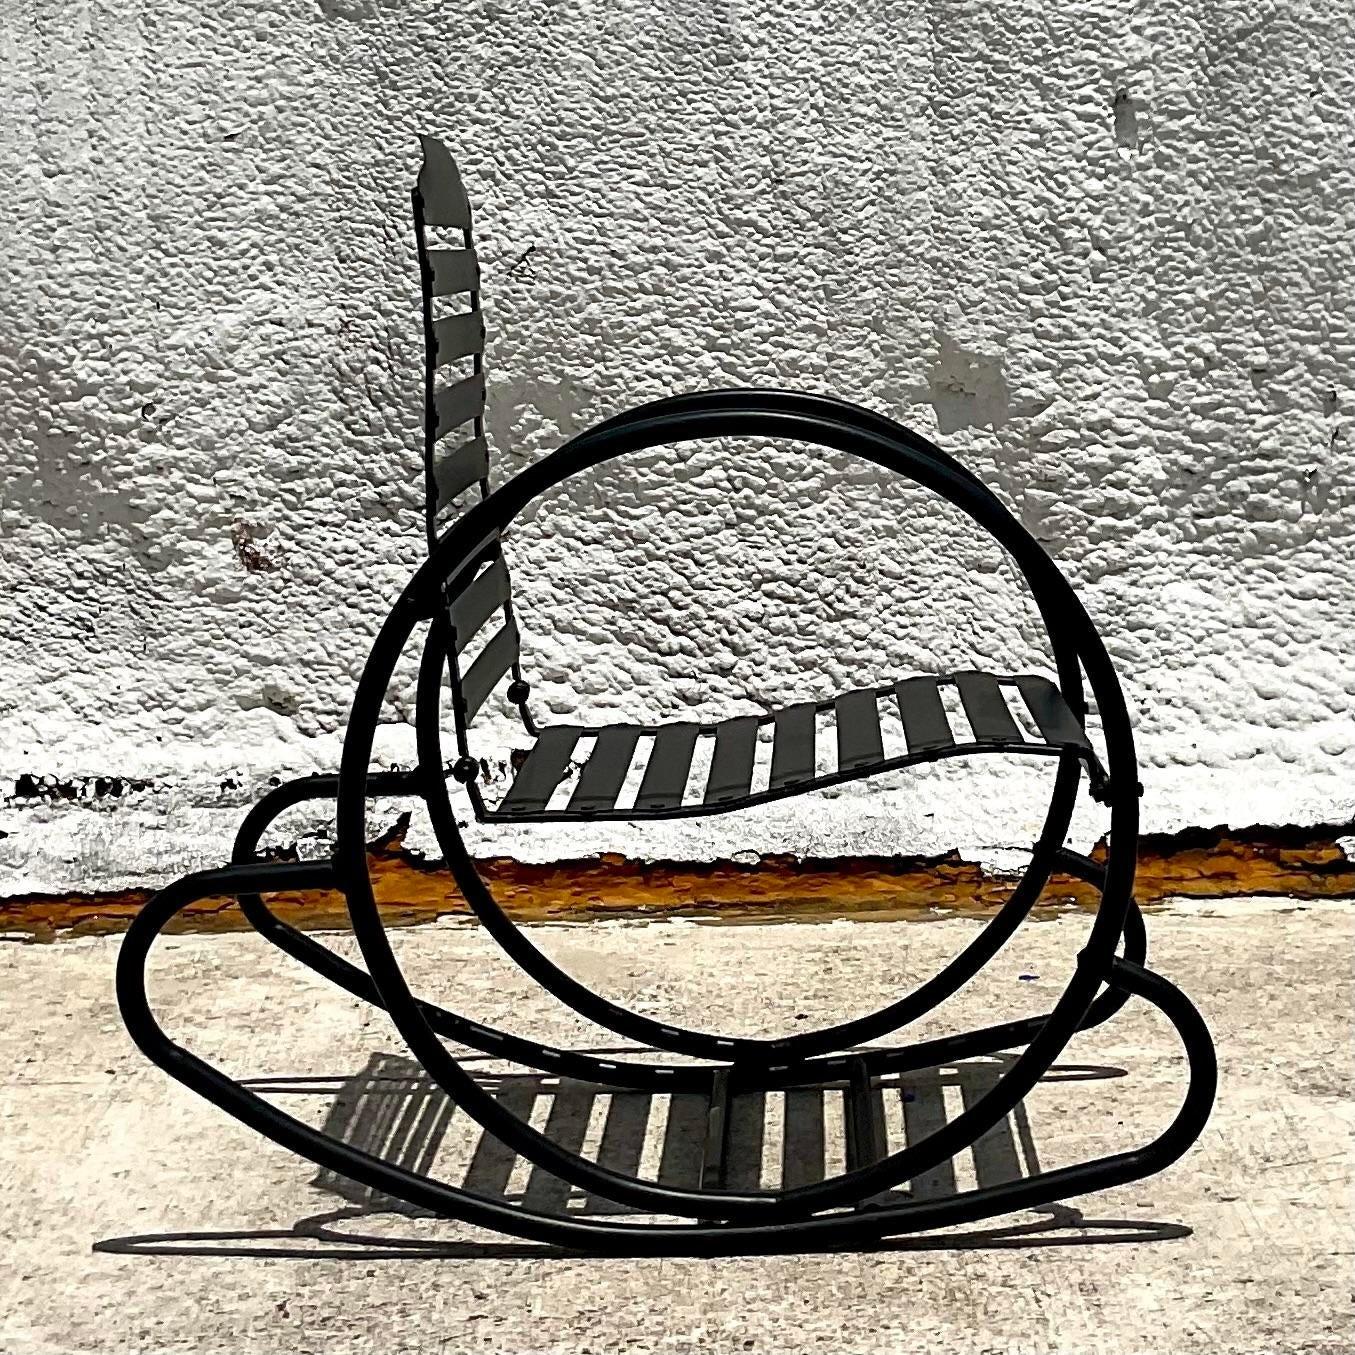 Un superbe rocking-chair vintage postmoderne. Un design tubulaire chic fraîchement peint par poudrage en noir mat. Acquis d'une propriété de Palm Beach.